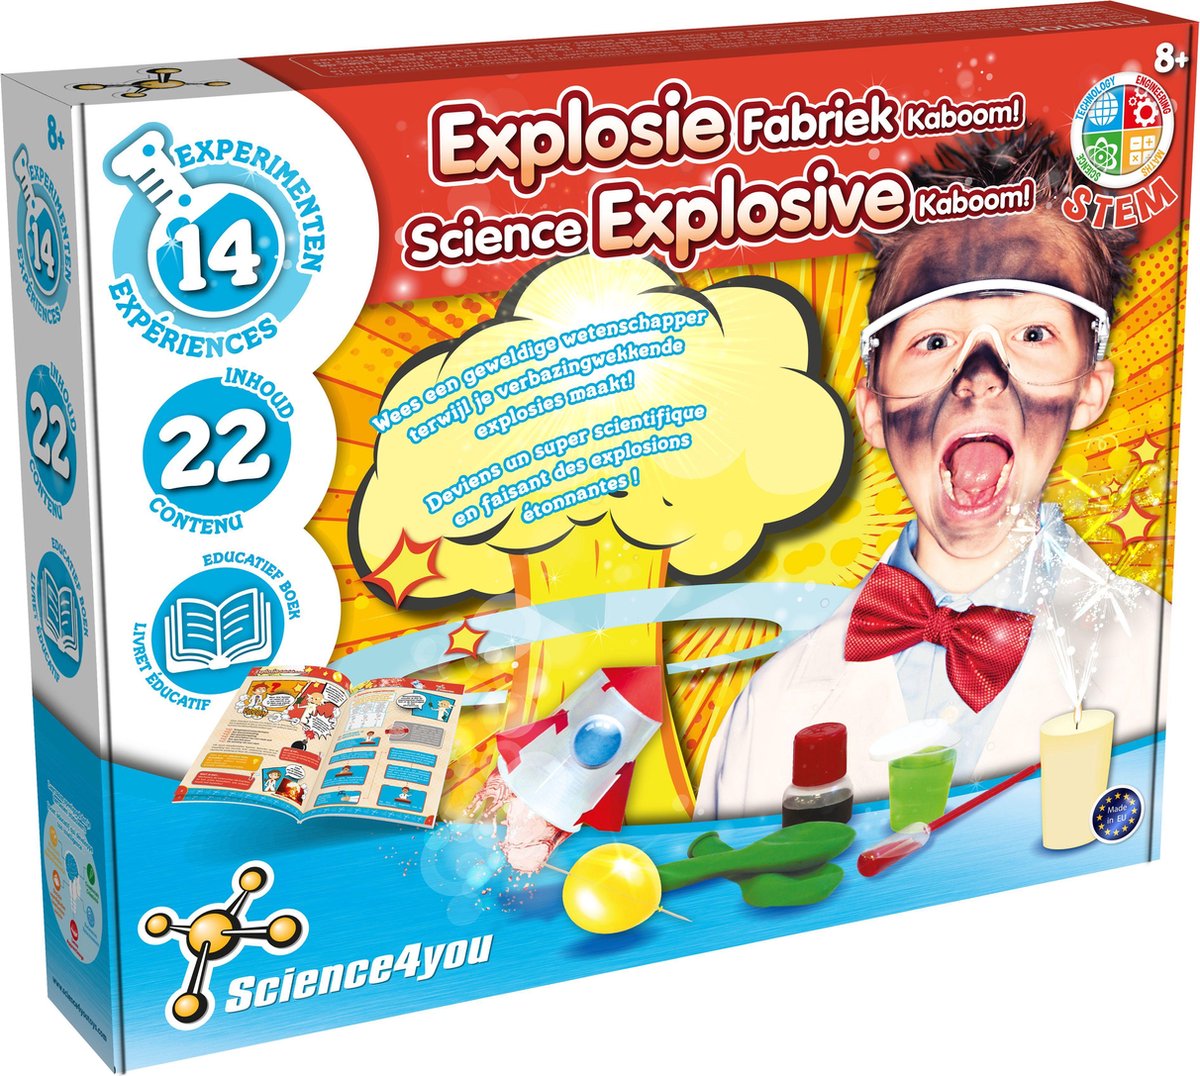 Science4you - Explosie Fabriek Kaboom - Experimenteerset - STEM